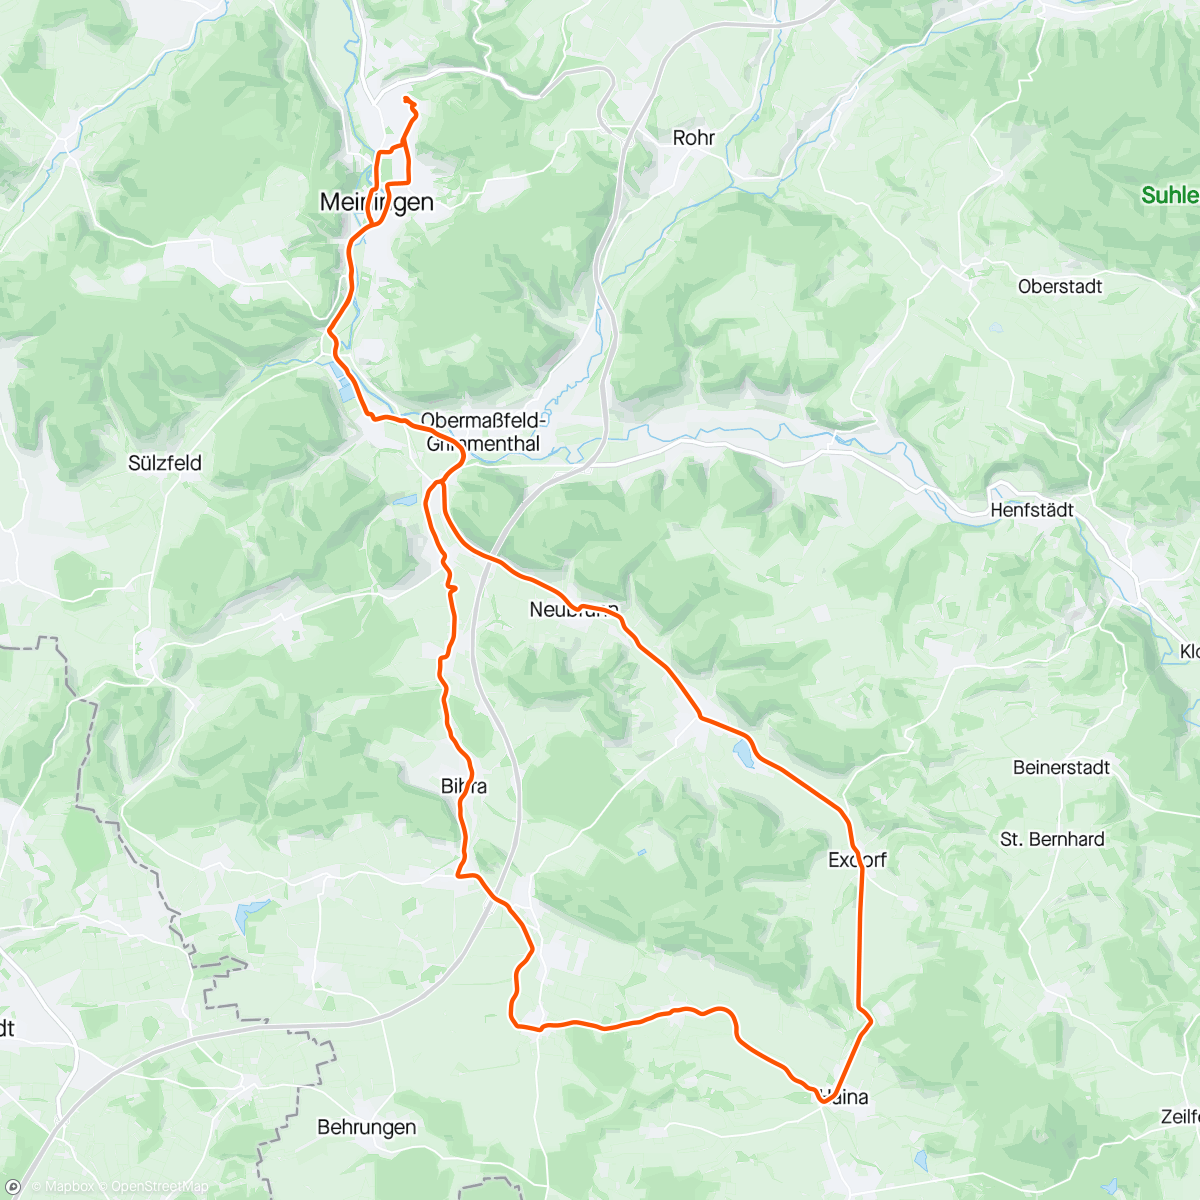 「Mittagsradfahrt mit Wolle」活動的地圖